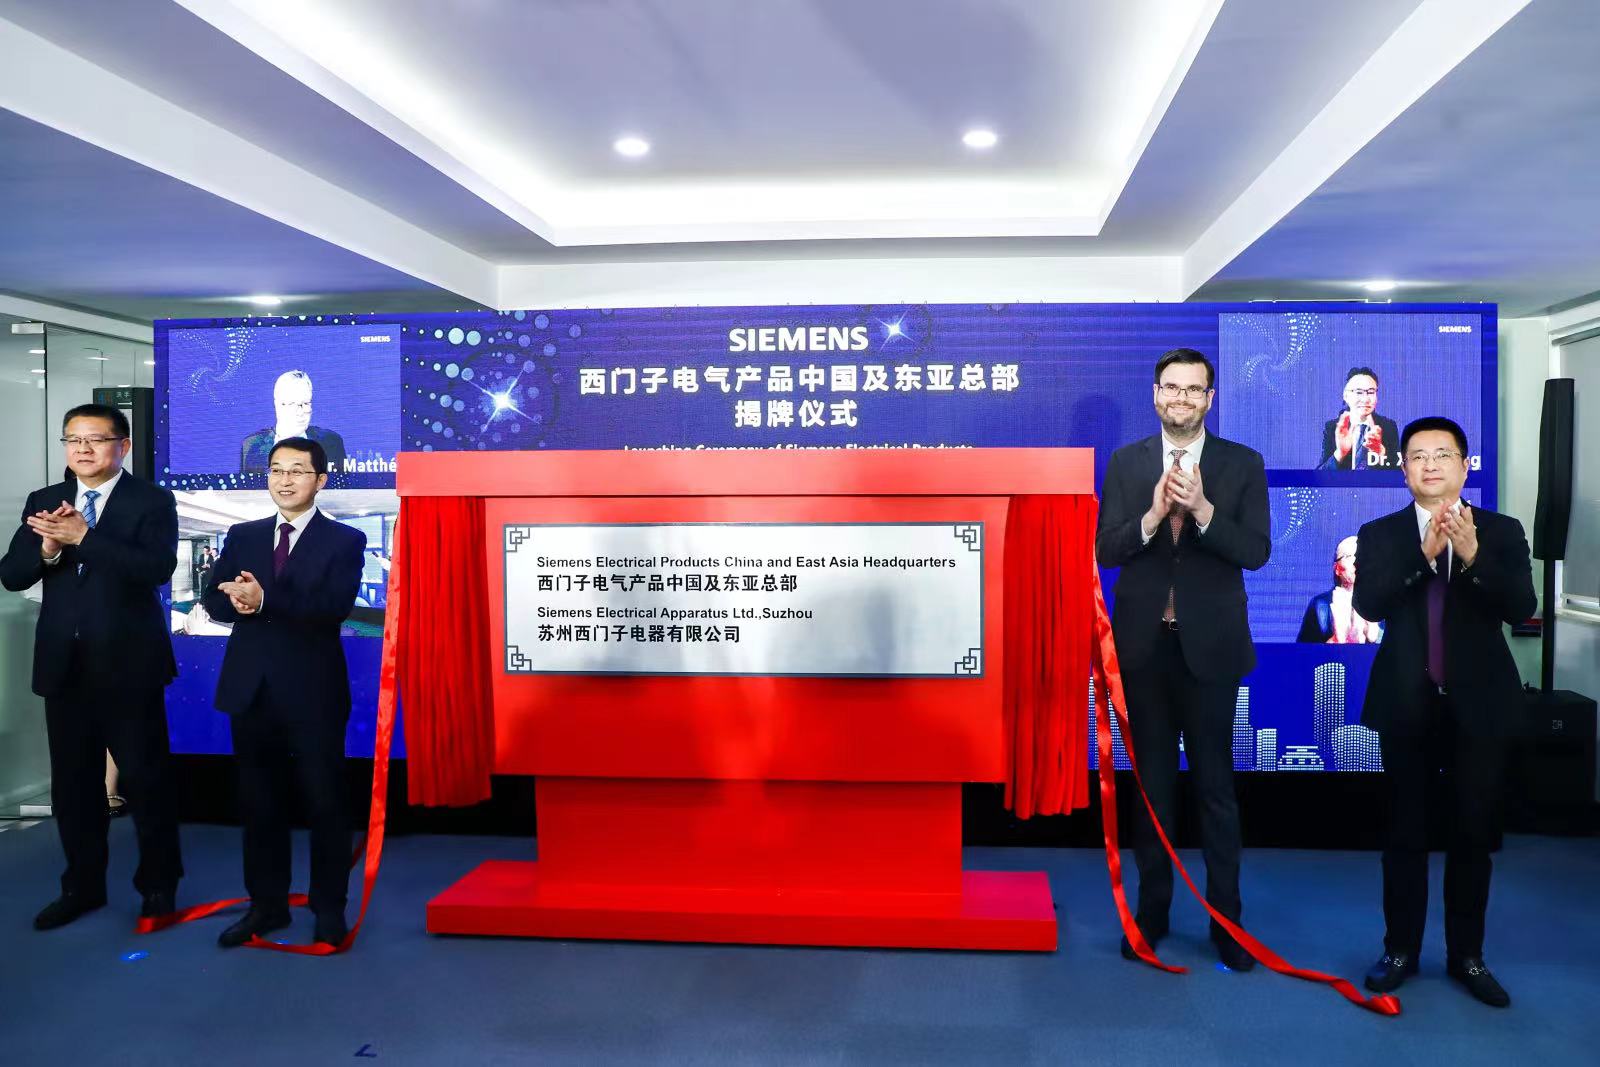 西门子电气产品中国总部正式升级为中国及东亚总部